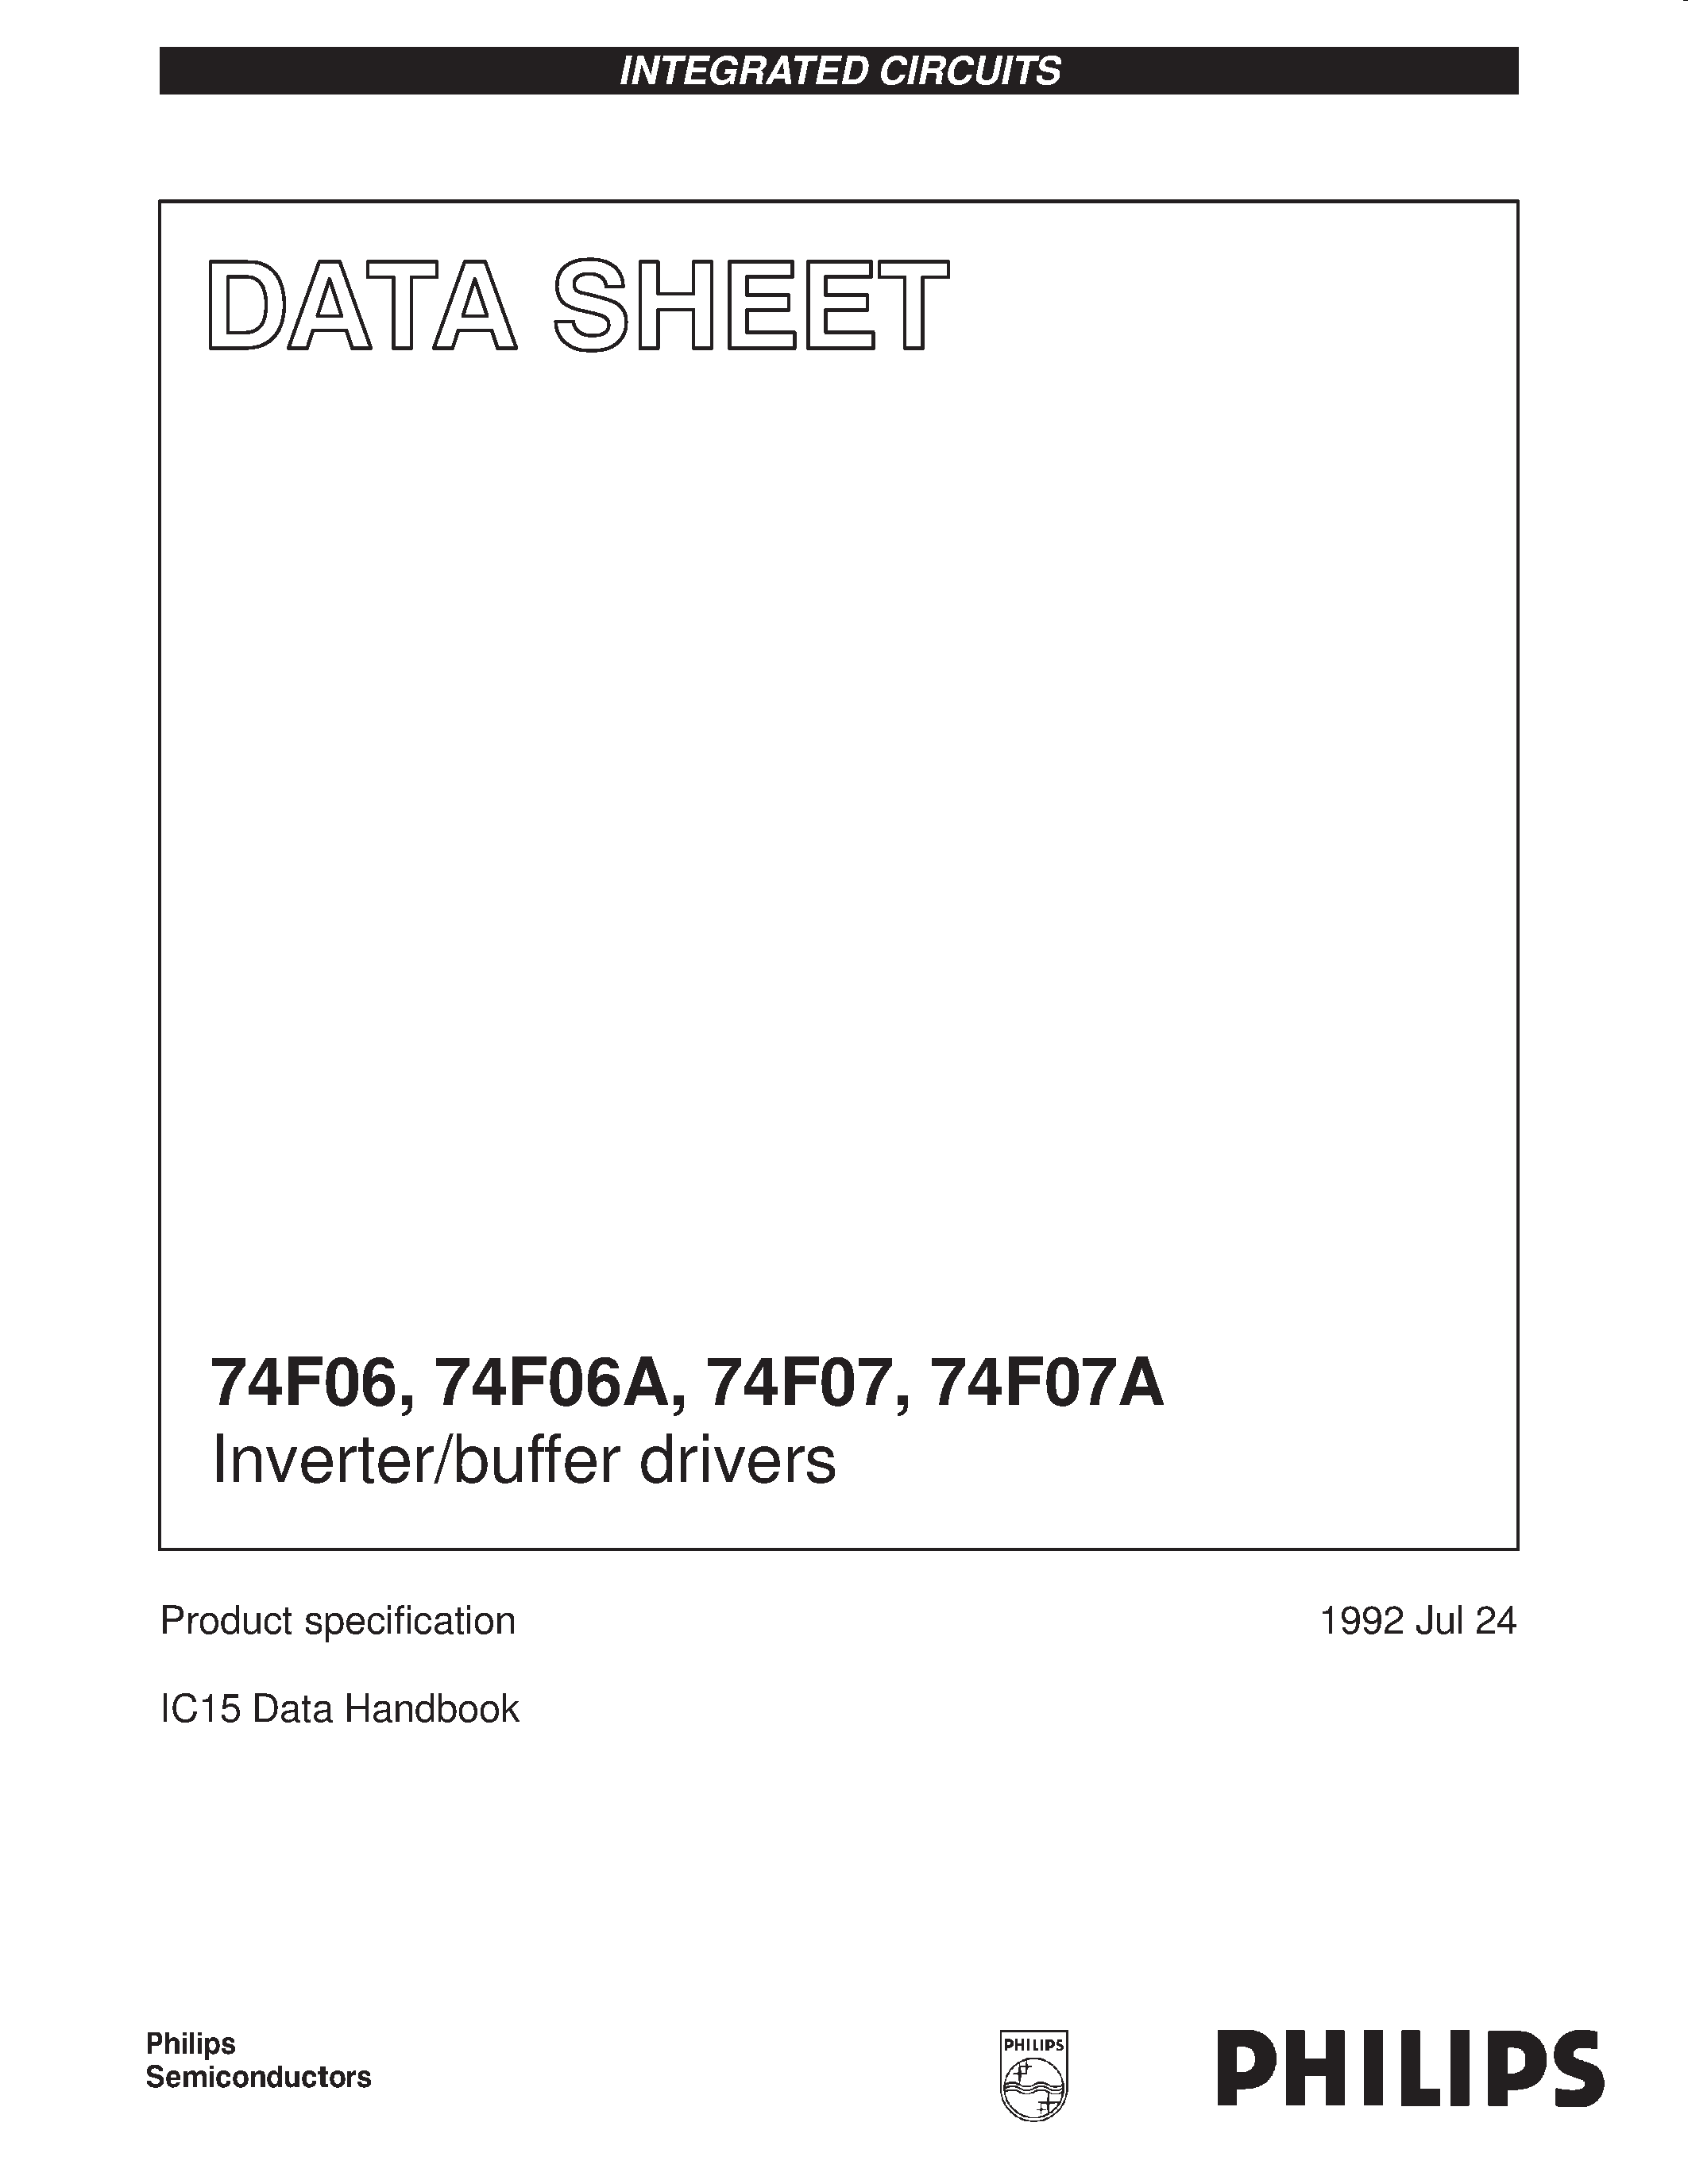 Datasheet 74F06 - Inverter/buffer drivers page 1